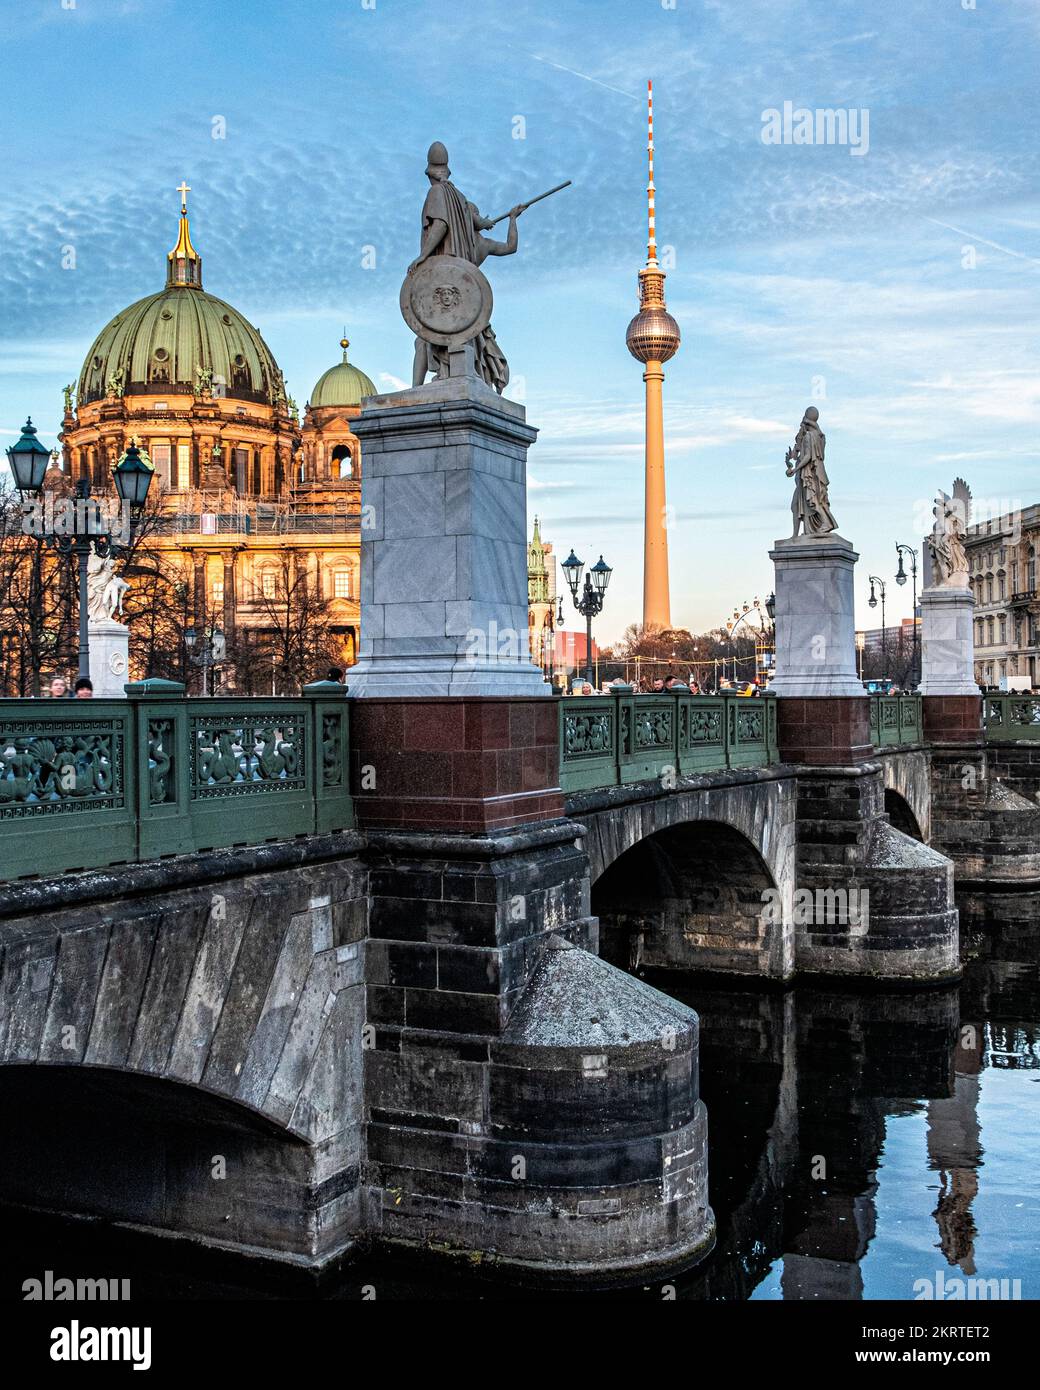 Berlín, Mitte, puente Schloss con esculturas de mármol, catedral de Berlín y torre de televisión, vistas a la ciudad Foto de stock